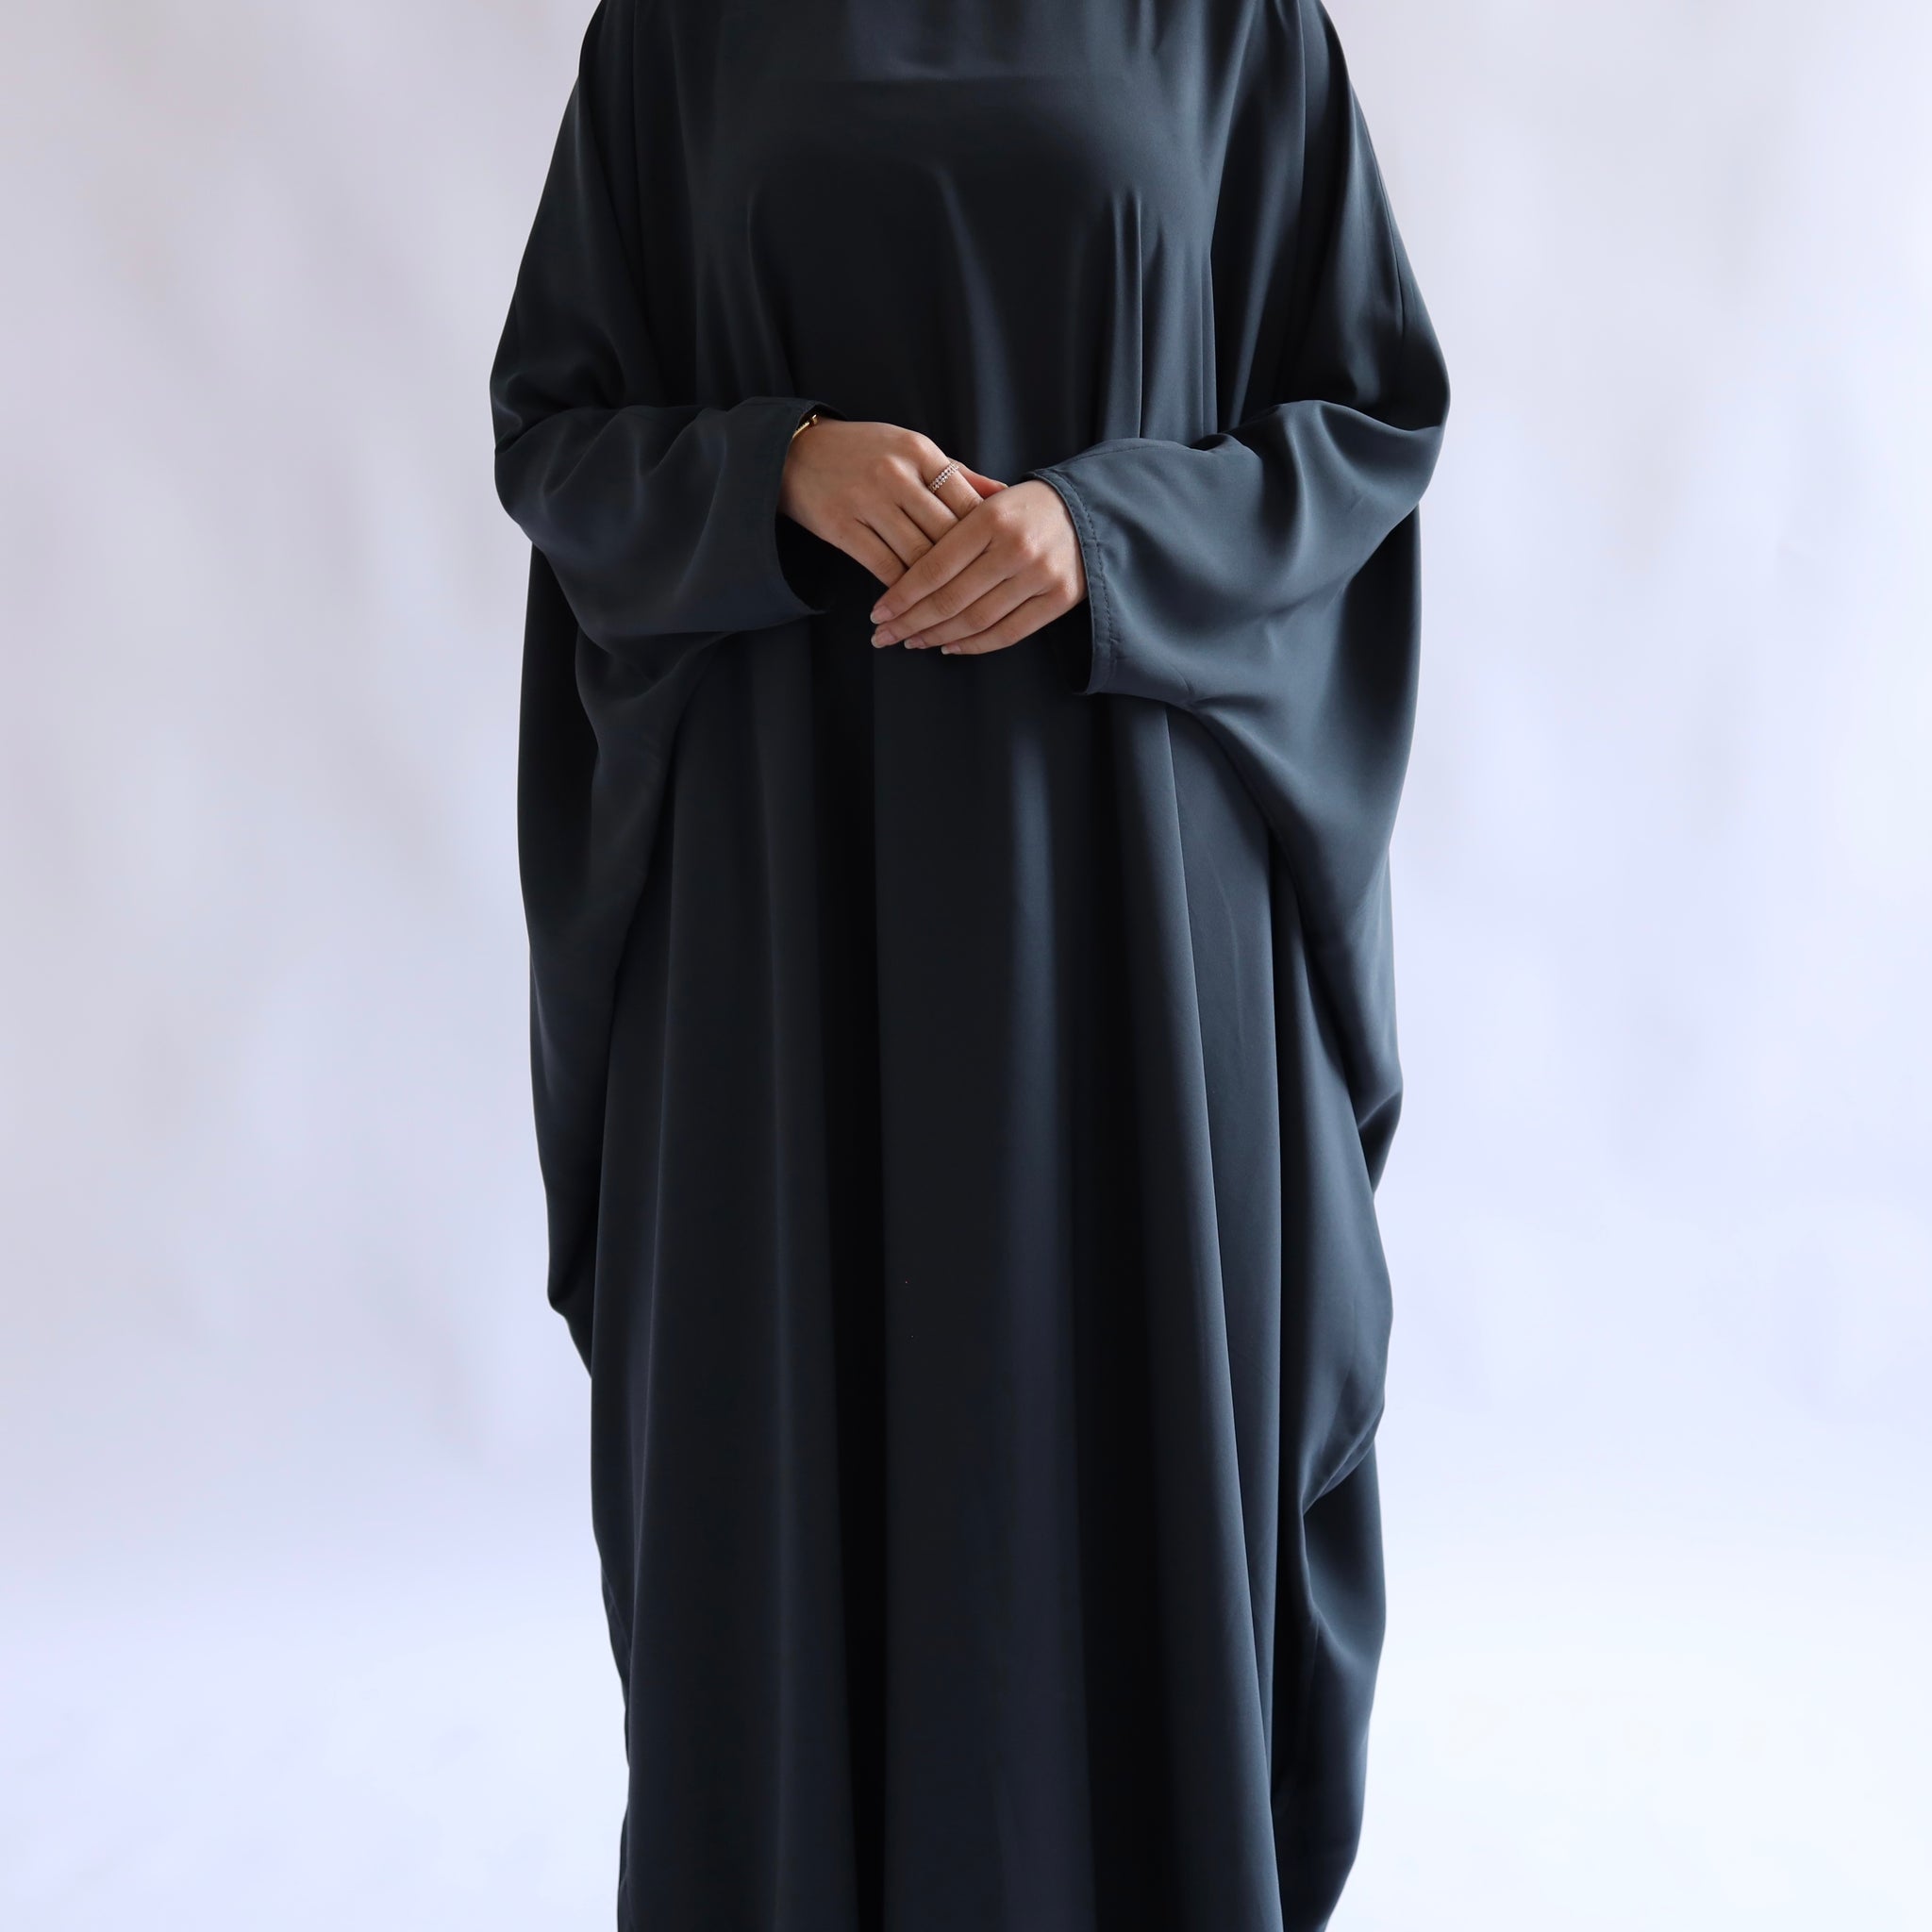 Teal Grey loose fit abaya – The Abaya Company London